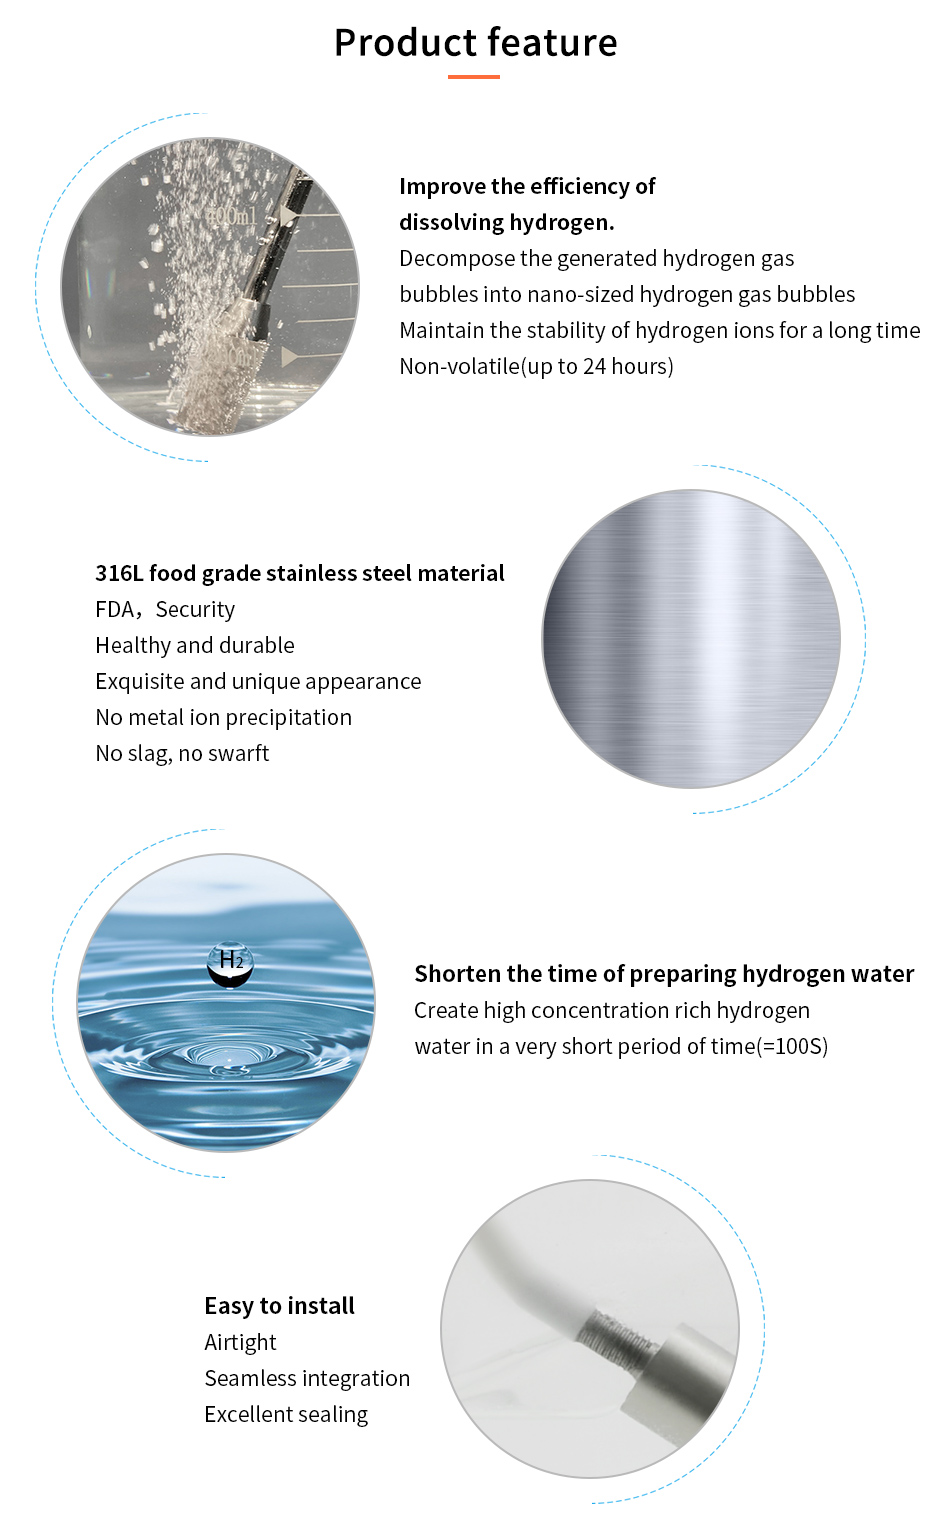 ہائیڈروجن سے بھرپور آبی مصنوعات کی تفصیلات صفحہ_04